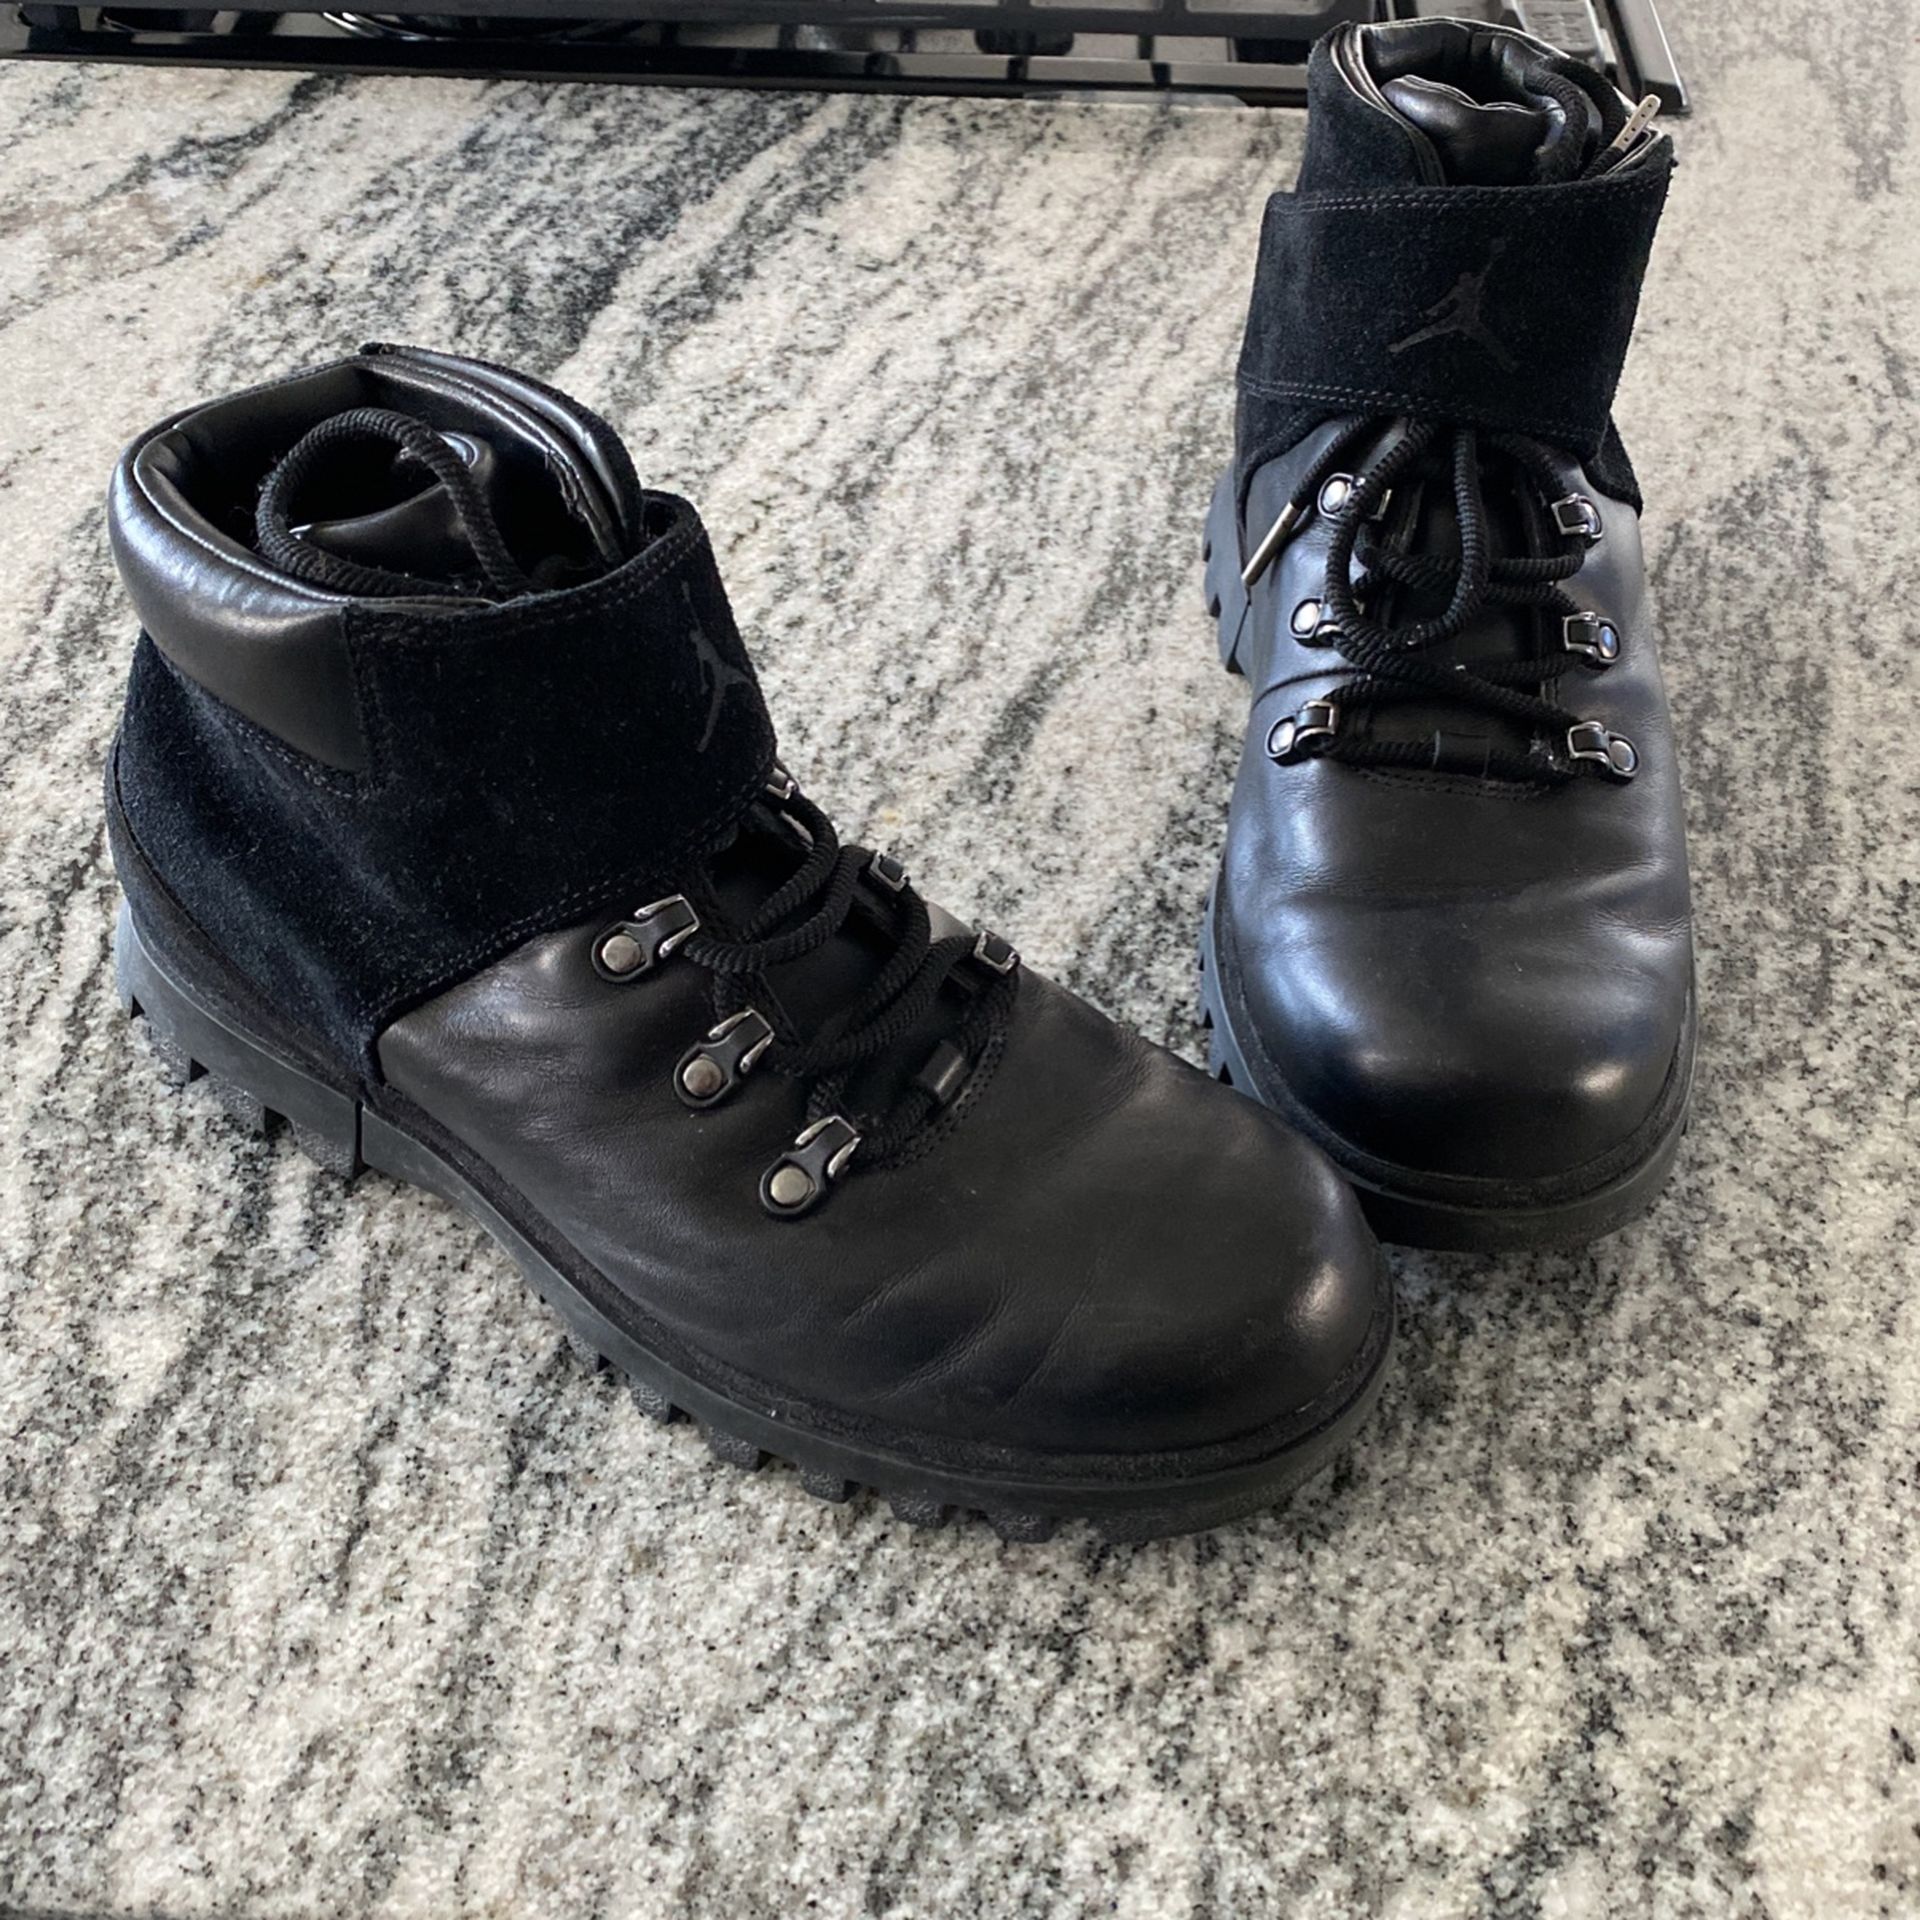 Black Jordan Boots Size 8.5